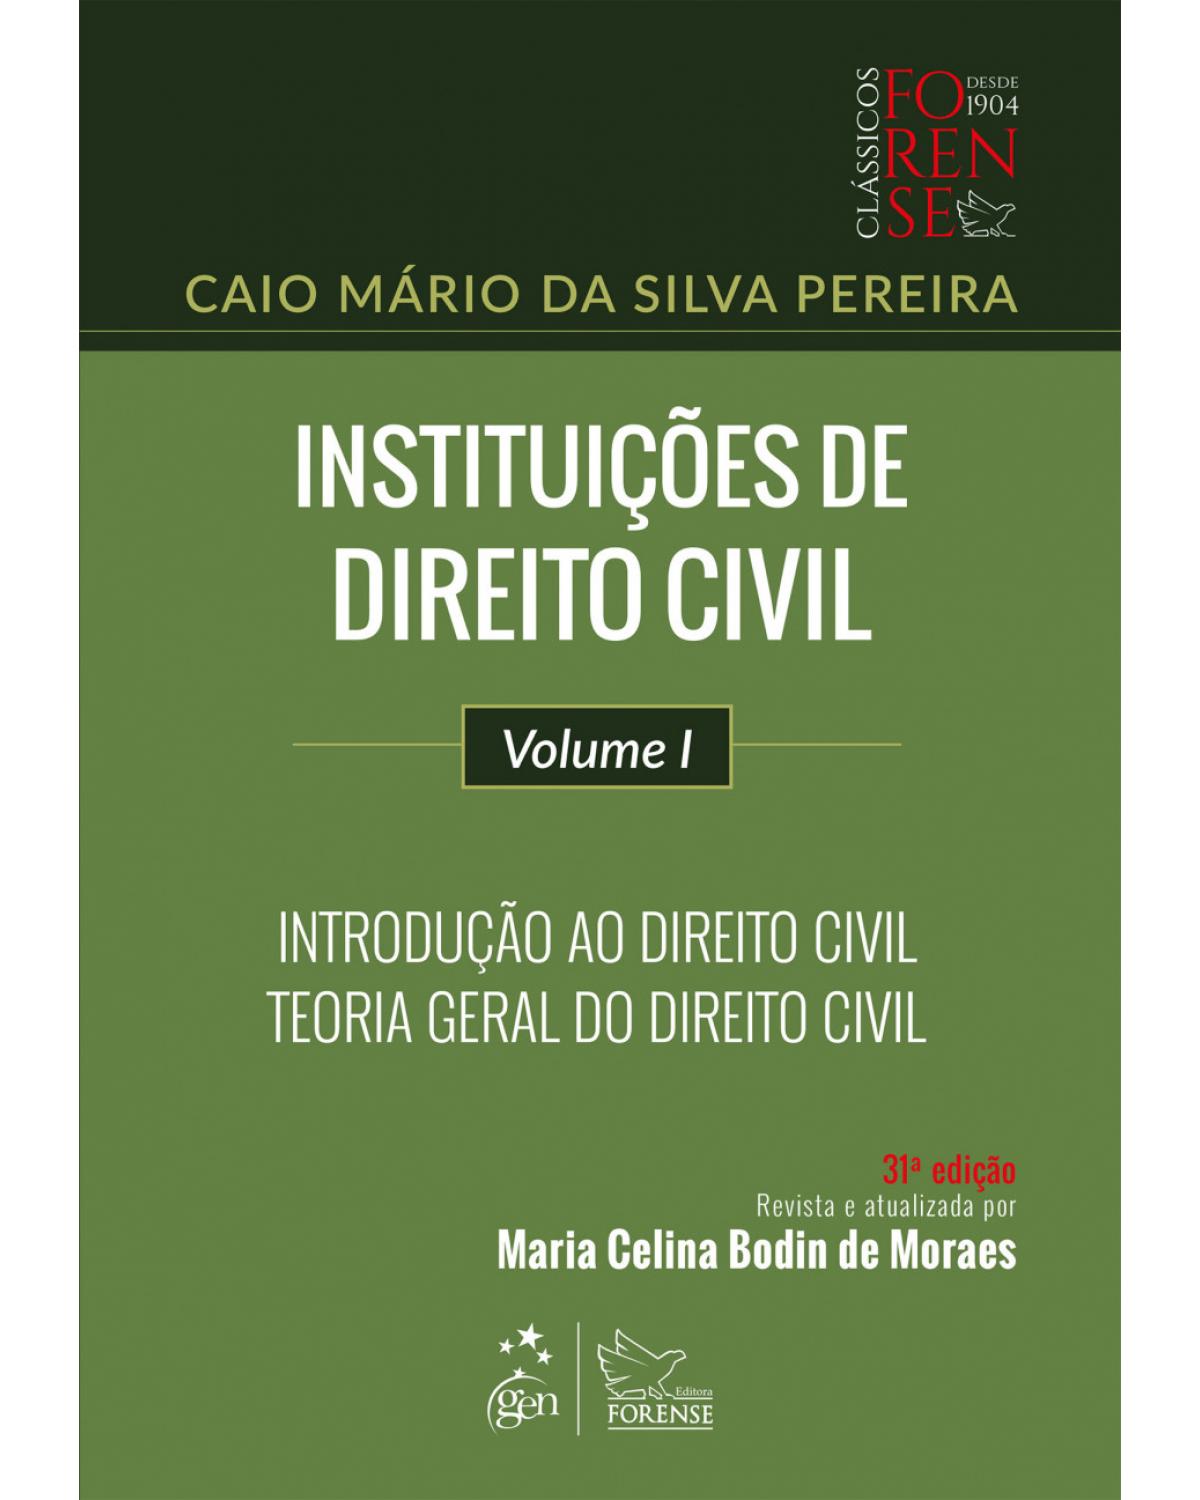 Instituições de direito civil - Volume 1: introdução ao direito civil, teoria geral do direito civil - 31ª Edição | 2018